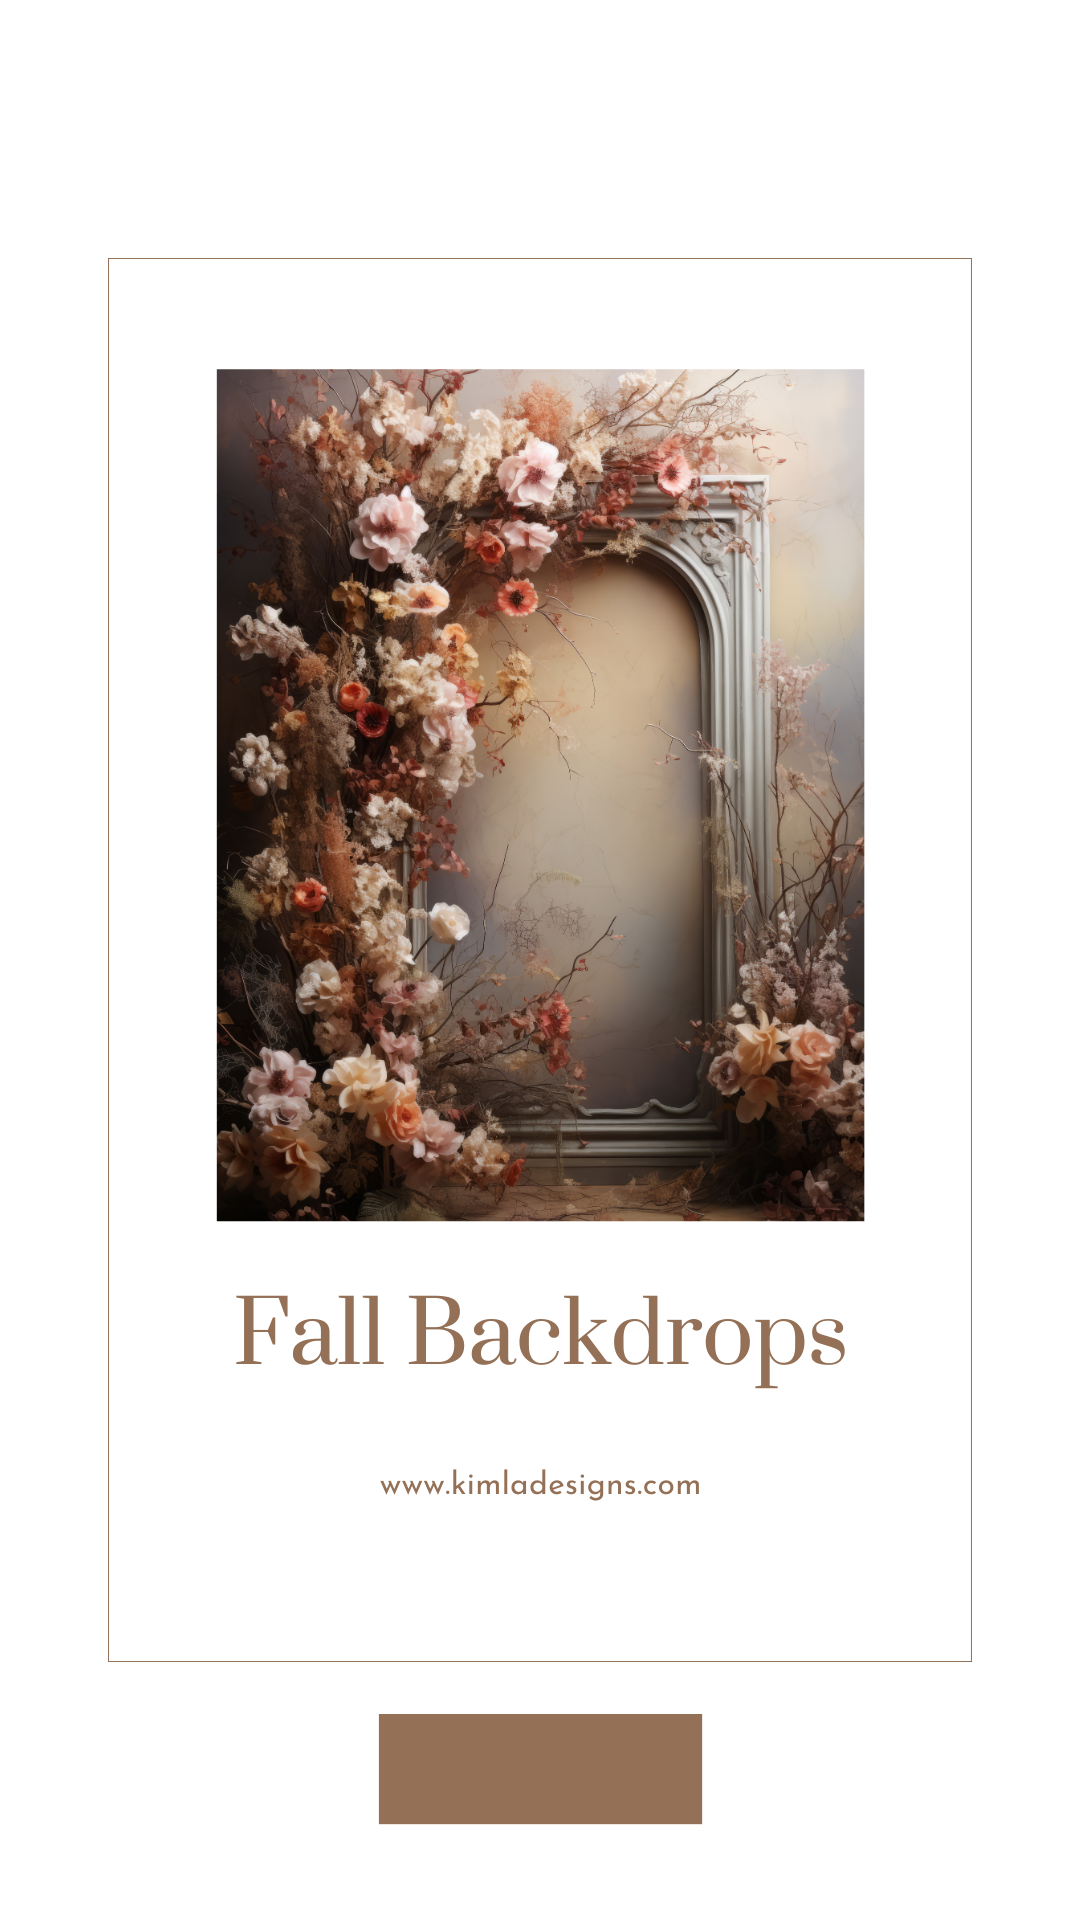 Fall Florals Photo Studio Digital Backdrops